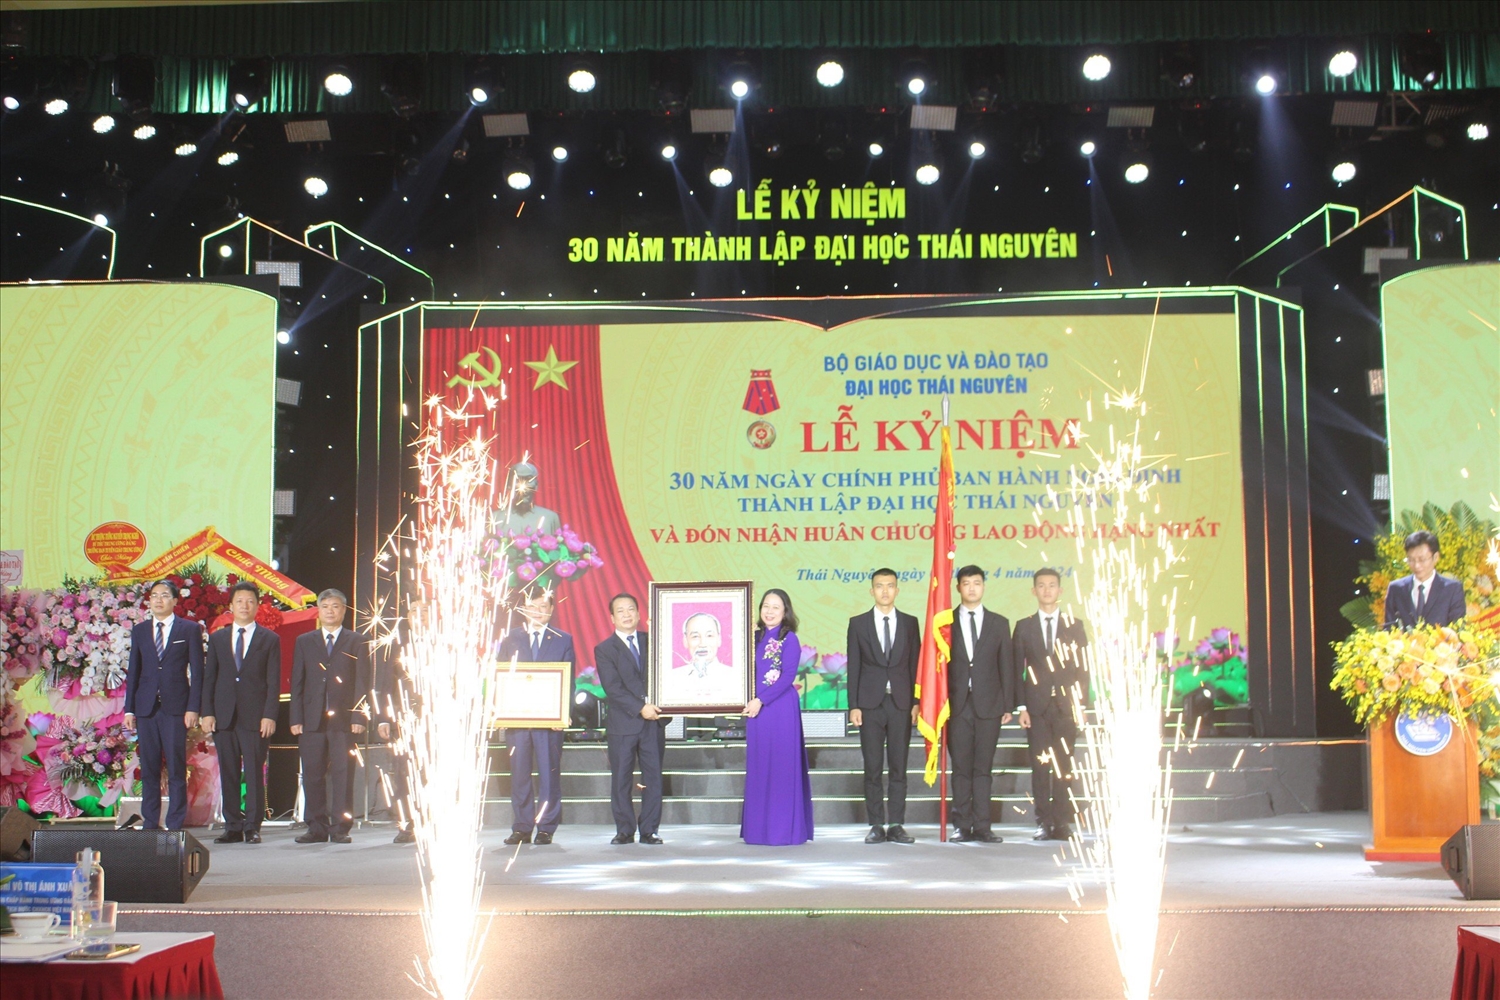 Đại học Thái Nguyên long trọng tổ chức Lễ kỷ niệm 30 năm ngày thành lập và Đón nhận Huân chương Lao động hạng Nhất